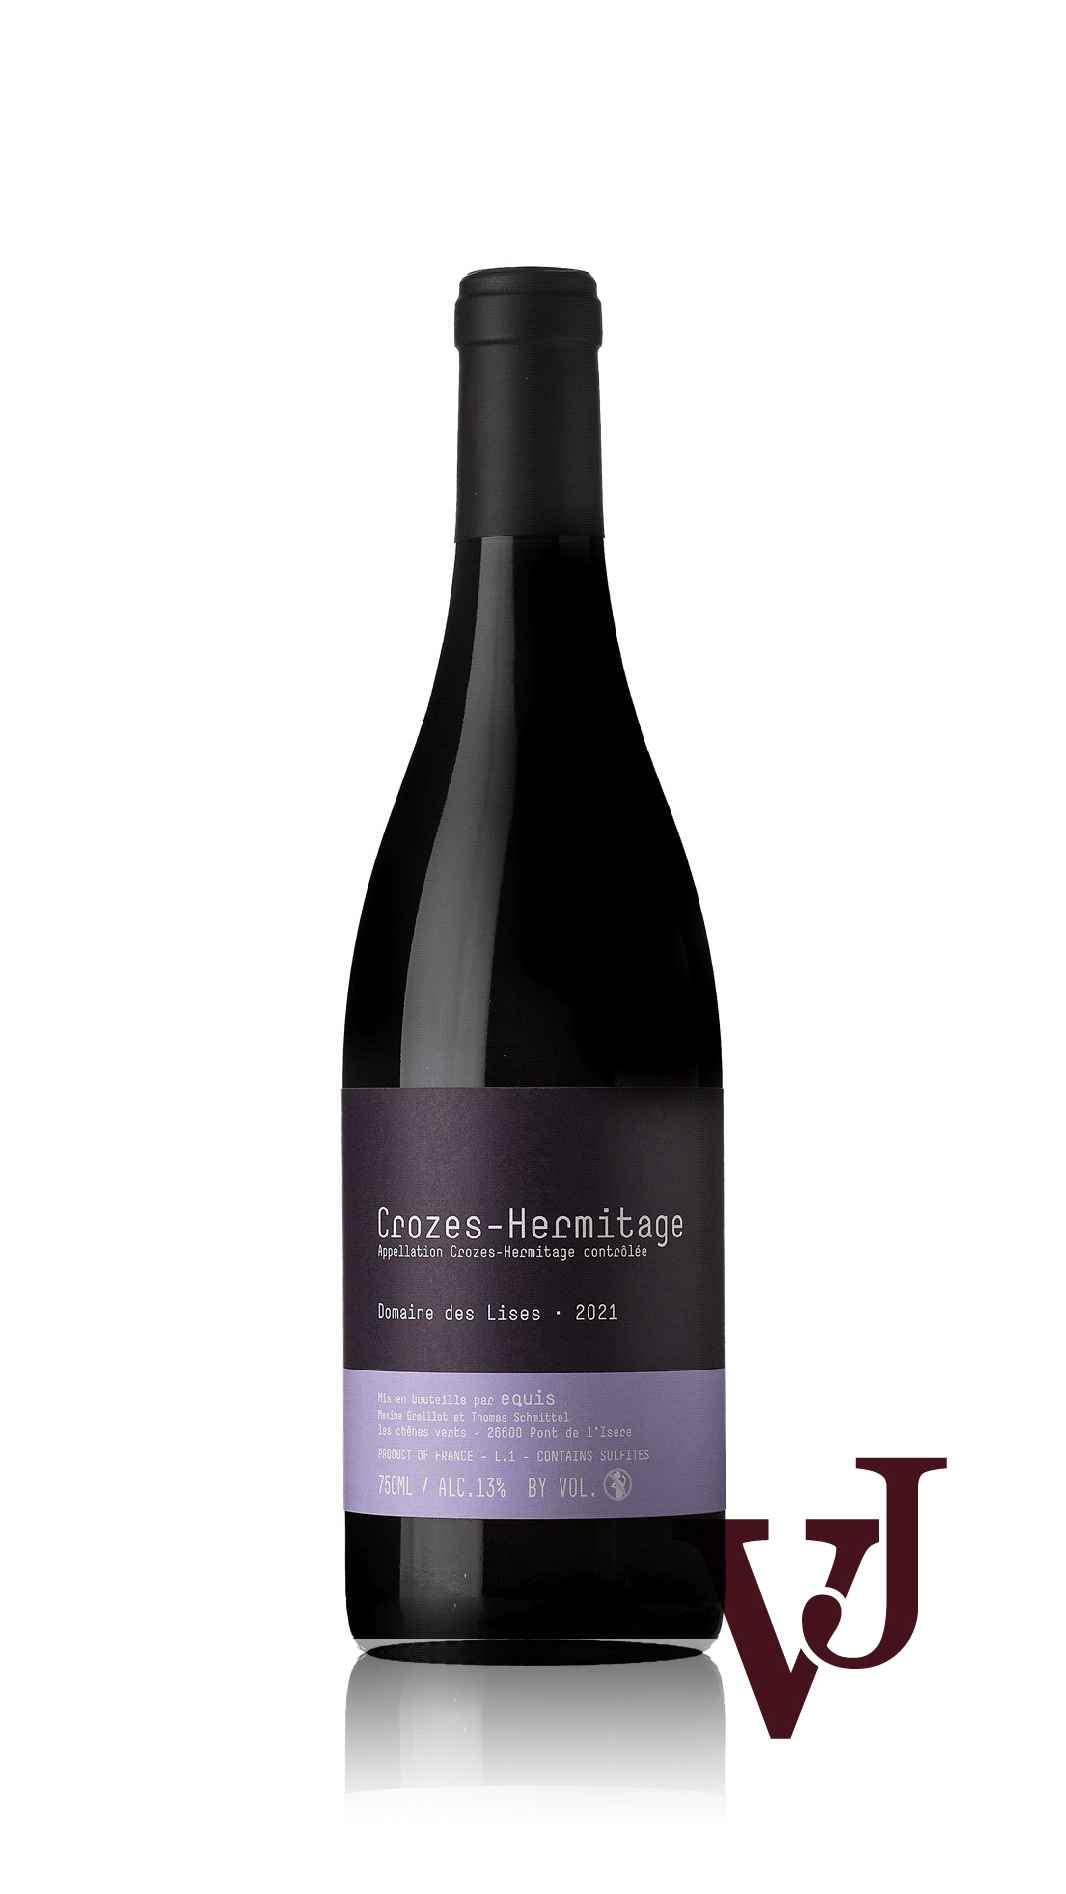 Rött Vin - Crozes-Hermitage Domaine des Lises 2021 artikel nummer 9472001 från producenten Domaine des Lises från området Frankrike